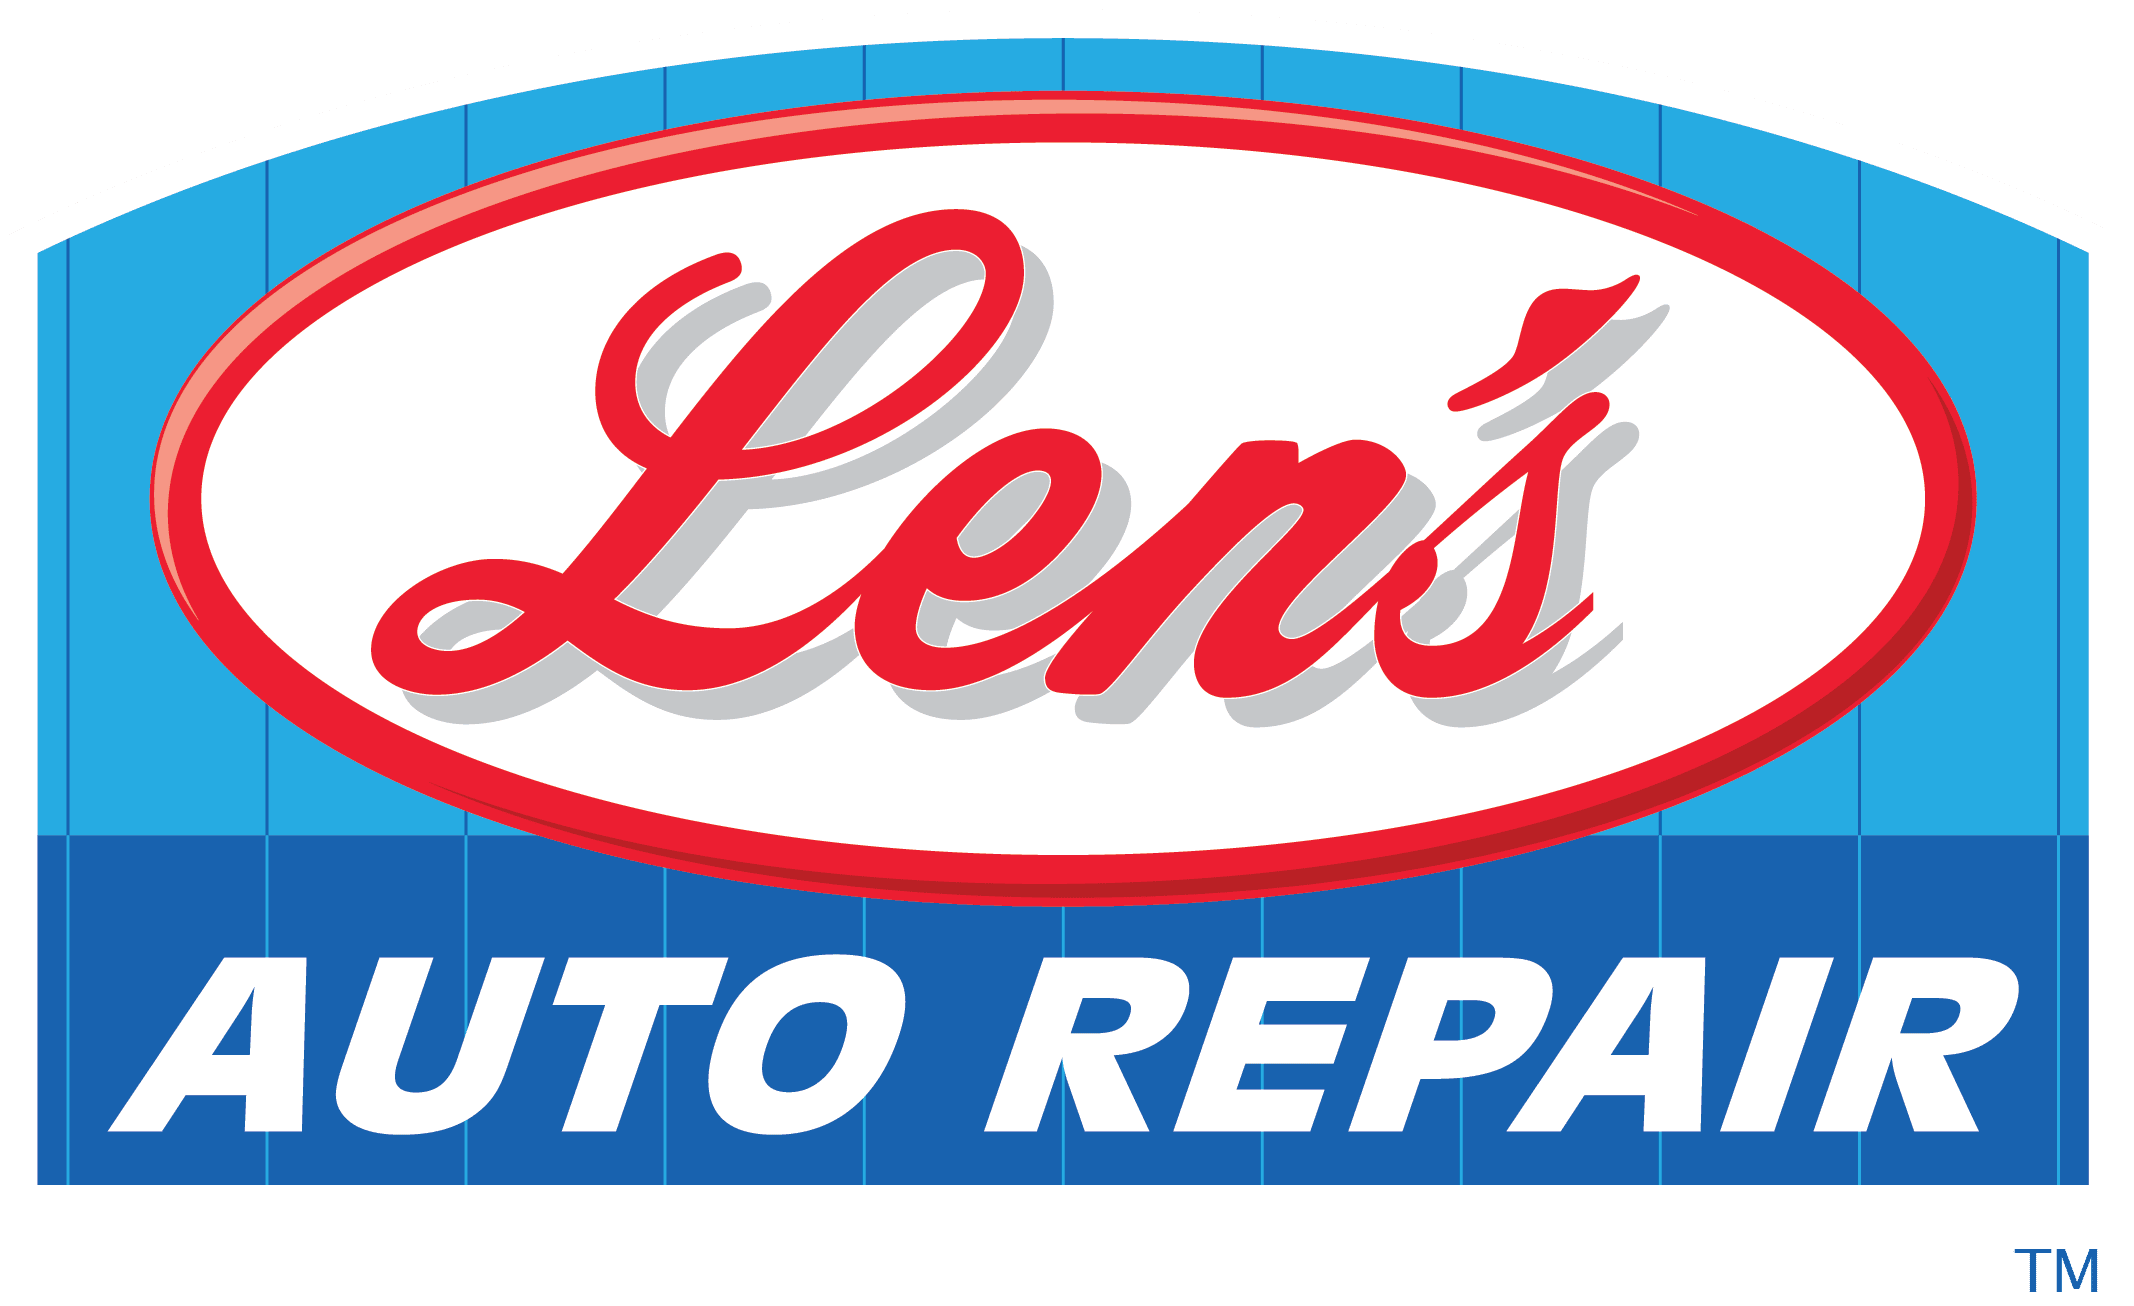 Len's Auto Repair